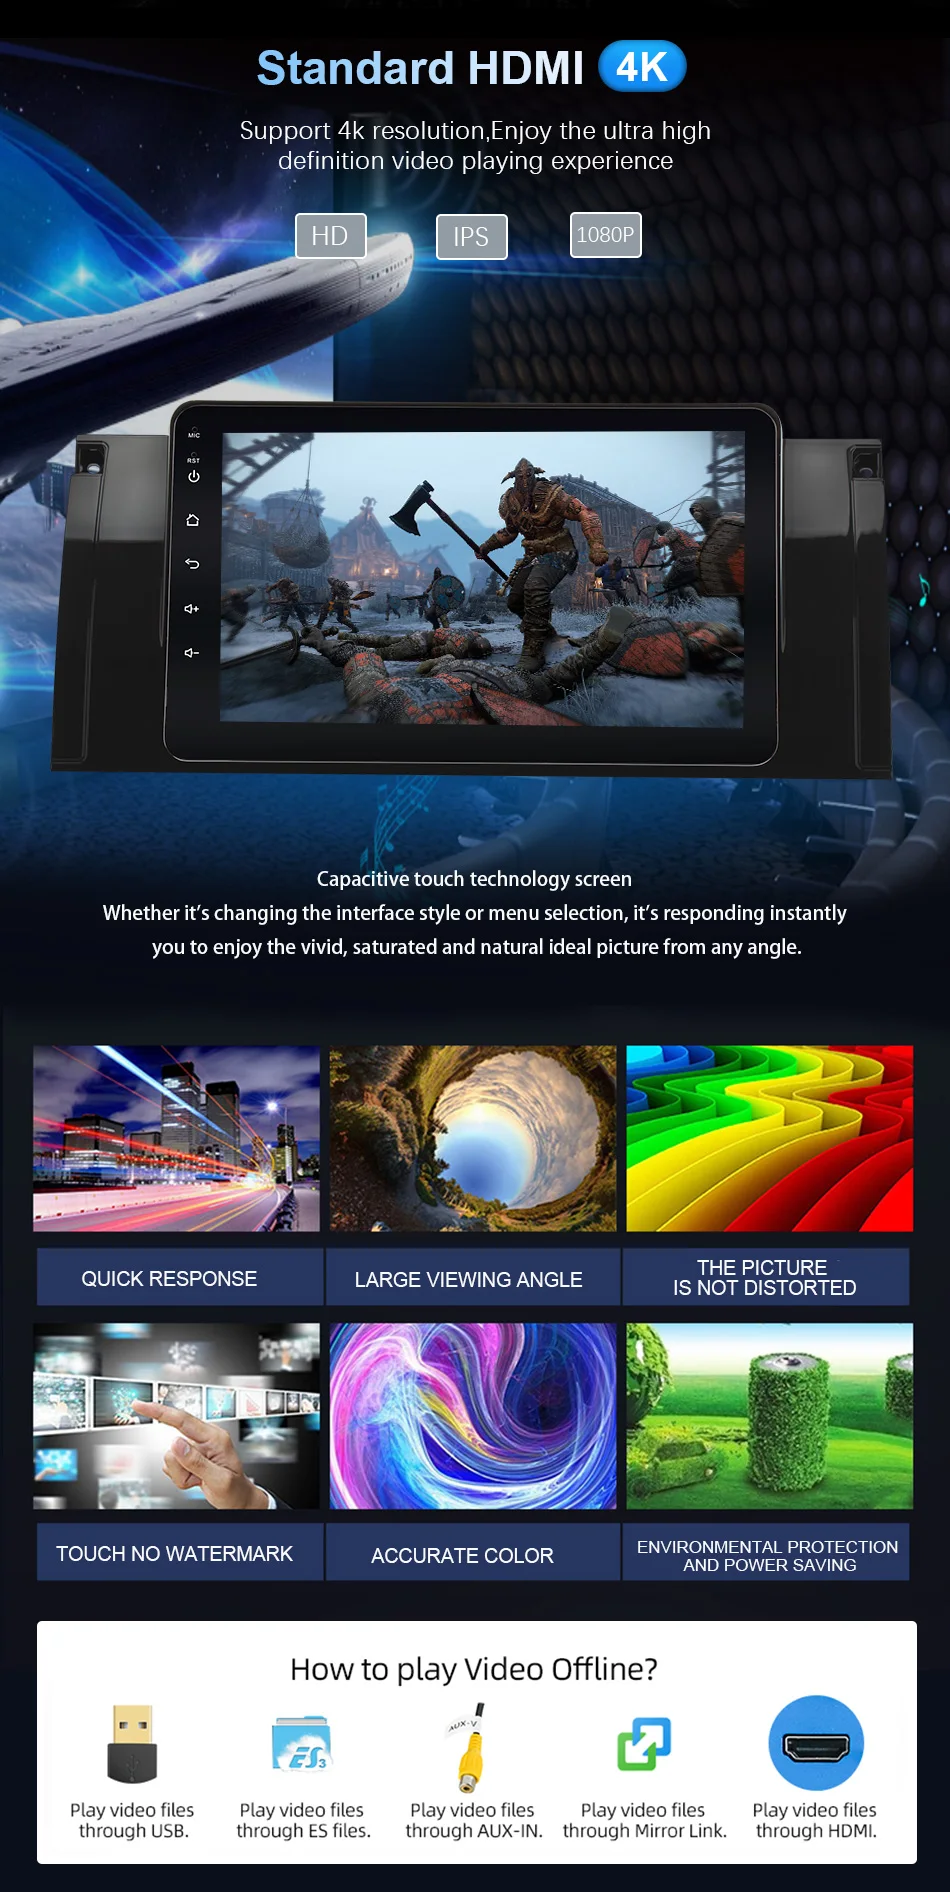 Eunavi Android 9,0 4G Автомобильный dvd-плеер для BMW X5 E53 E39 gps стерео аудио навигация Мультимедиа экран головное устройство PX6 с HDMI